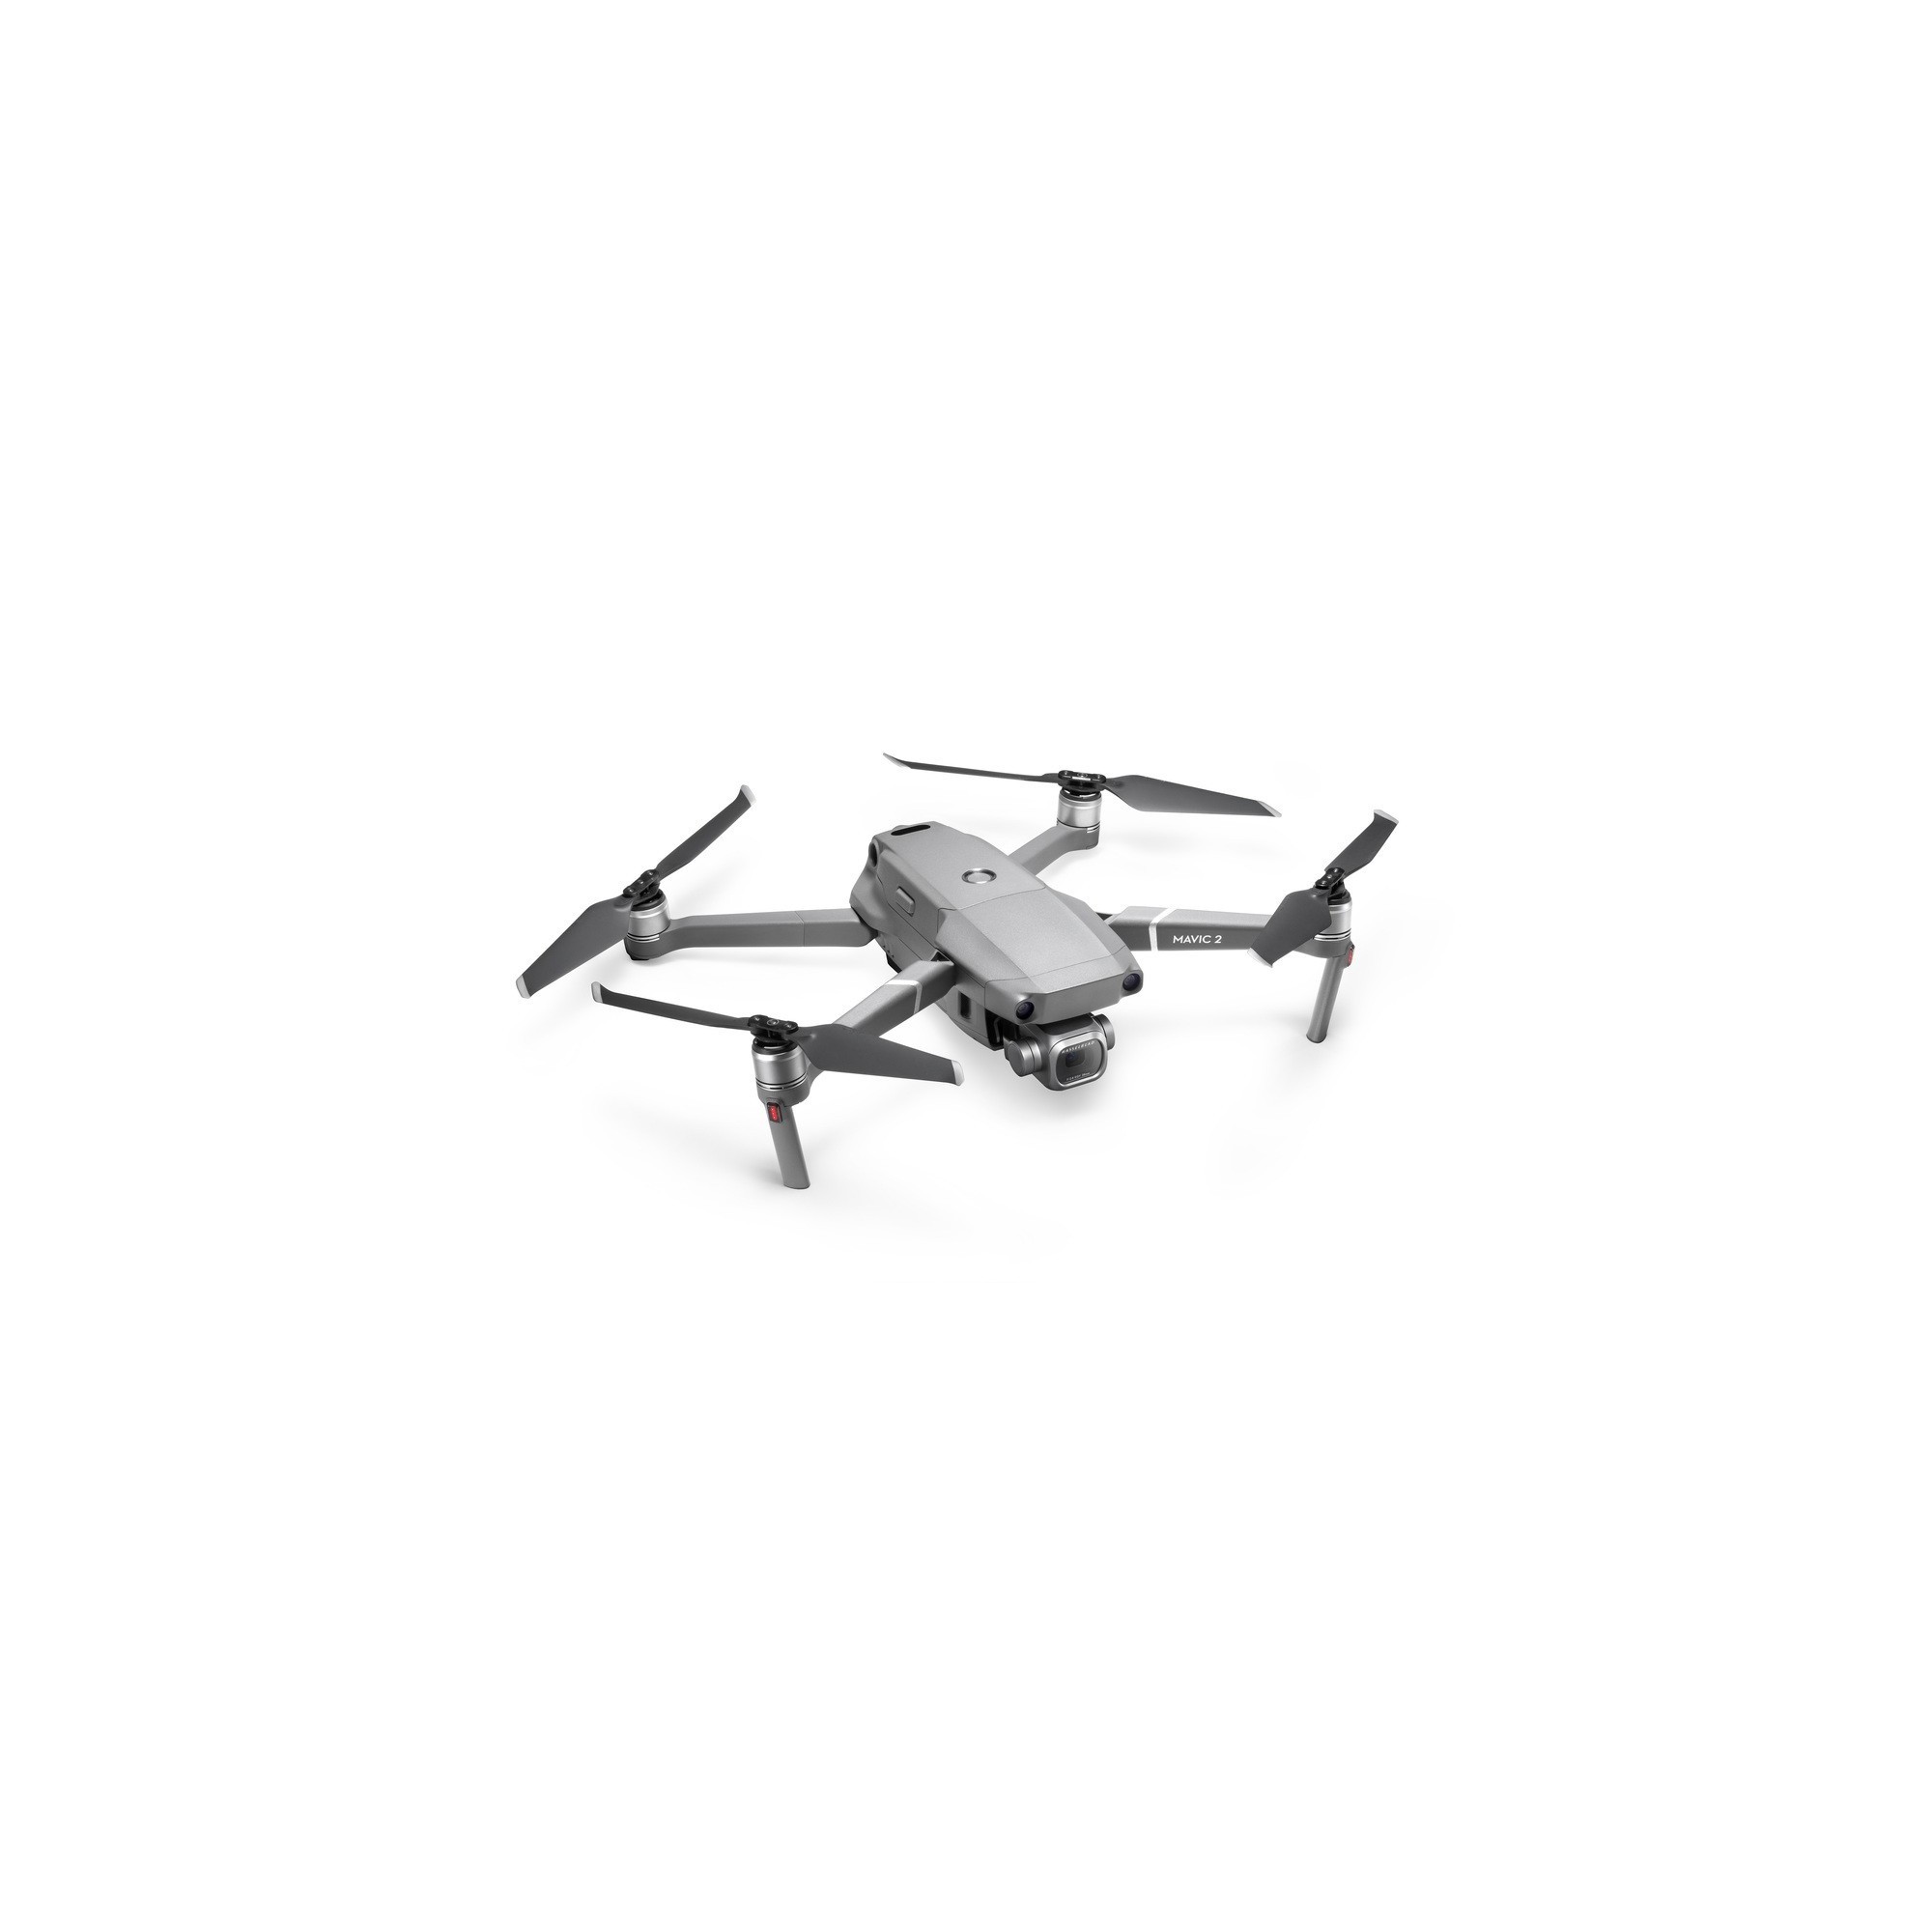  Dron de fotografía aérea mejorado con cámara 4K